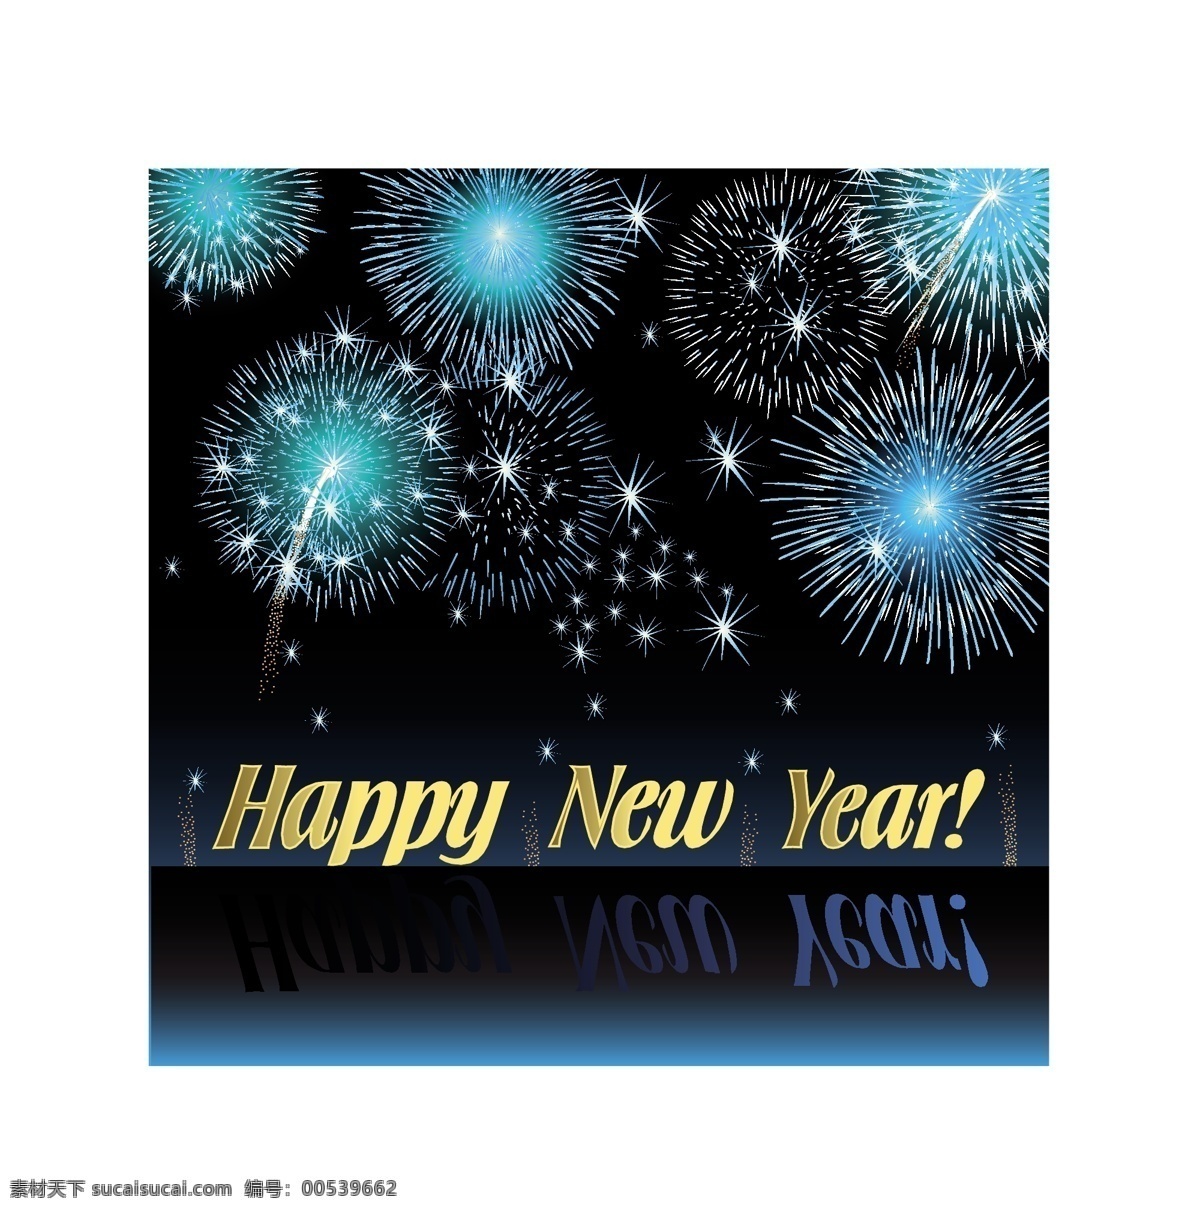 2011 璀璨 烟花 矢量 eps格式 彩色 七彩 矢量素材 唯美 喜庆 新年 矢量图 其他矢量图